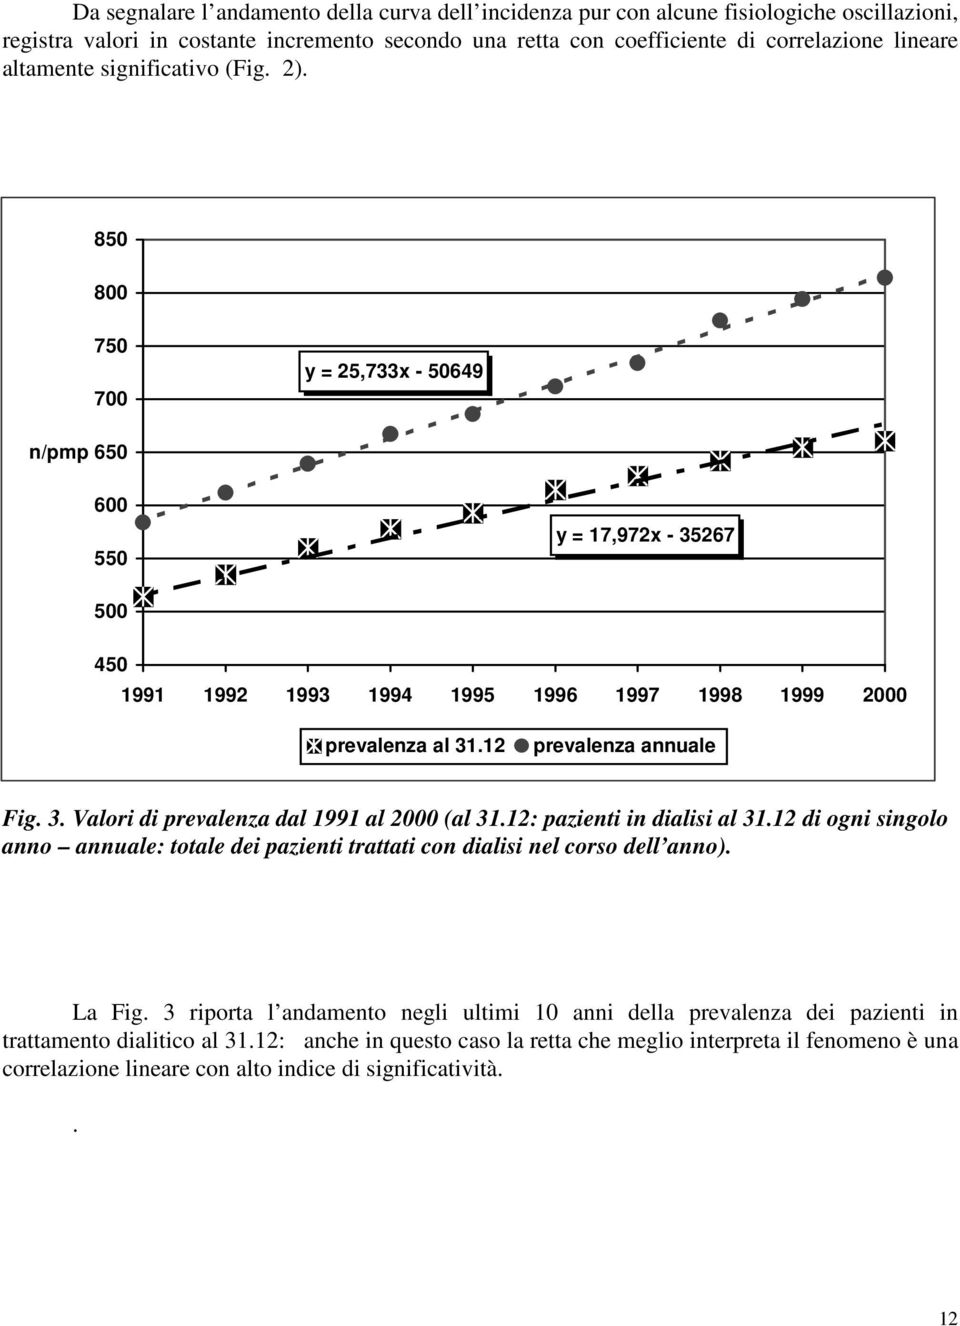 12 prevalenza annuale Fig. 3. Valori di prevalenza dal 1991 al 2000 (al 31.12: pazienti in dialisi al 31.12 di ogni singolo anno annuale: totale dei pazienti trattati con dialisi nel corso dell anno).